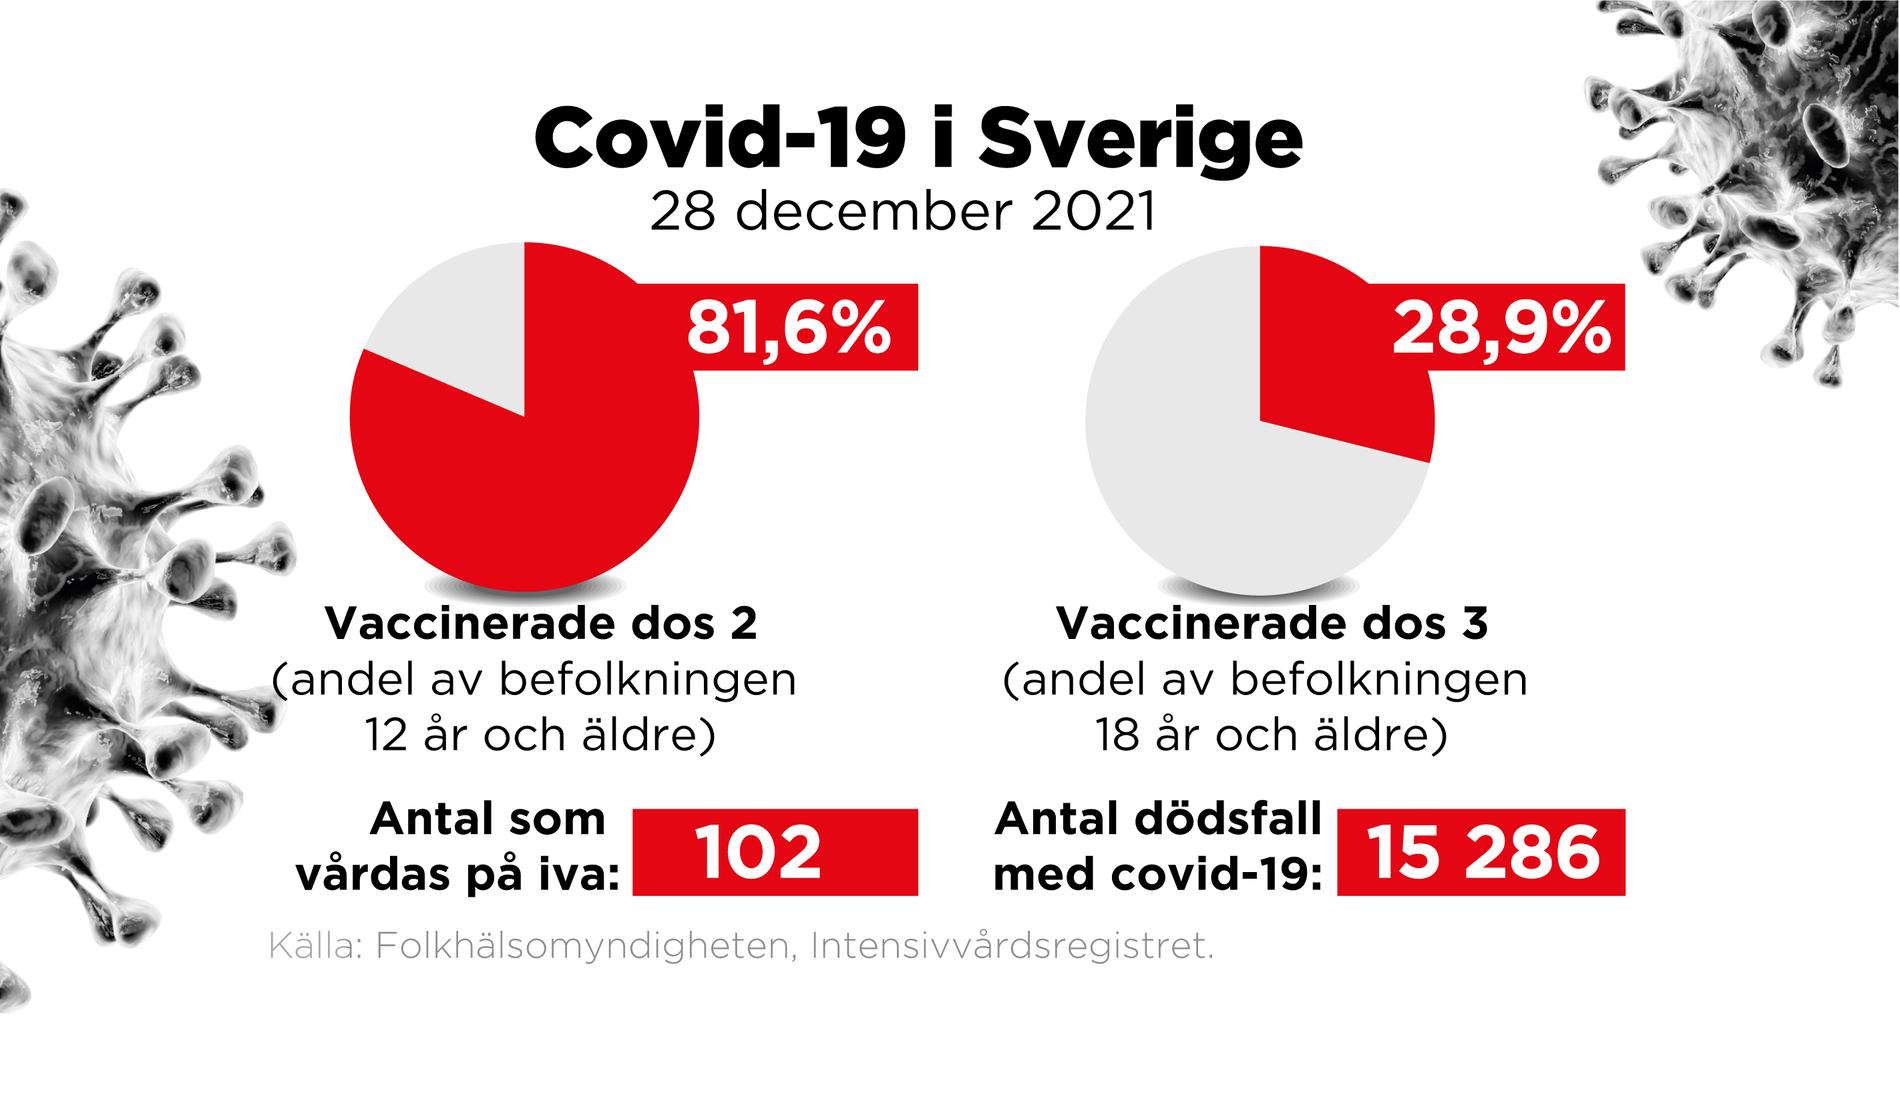 Covid-19 läget i Sverige 28 december 2021.